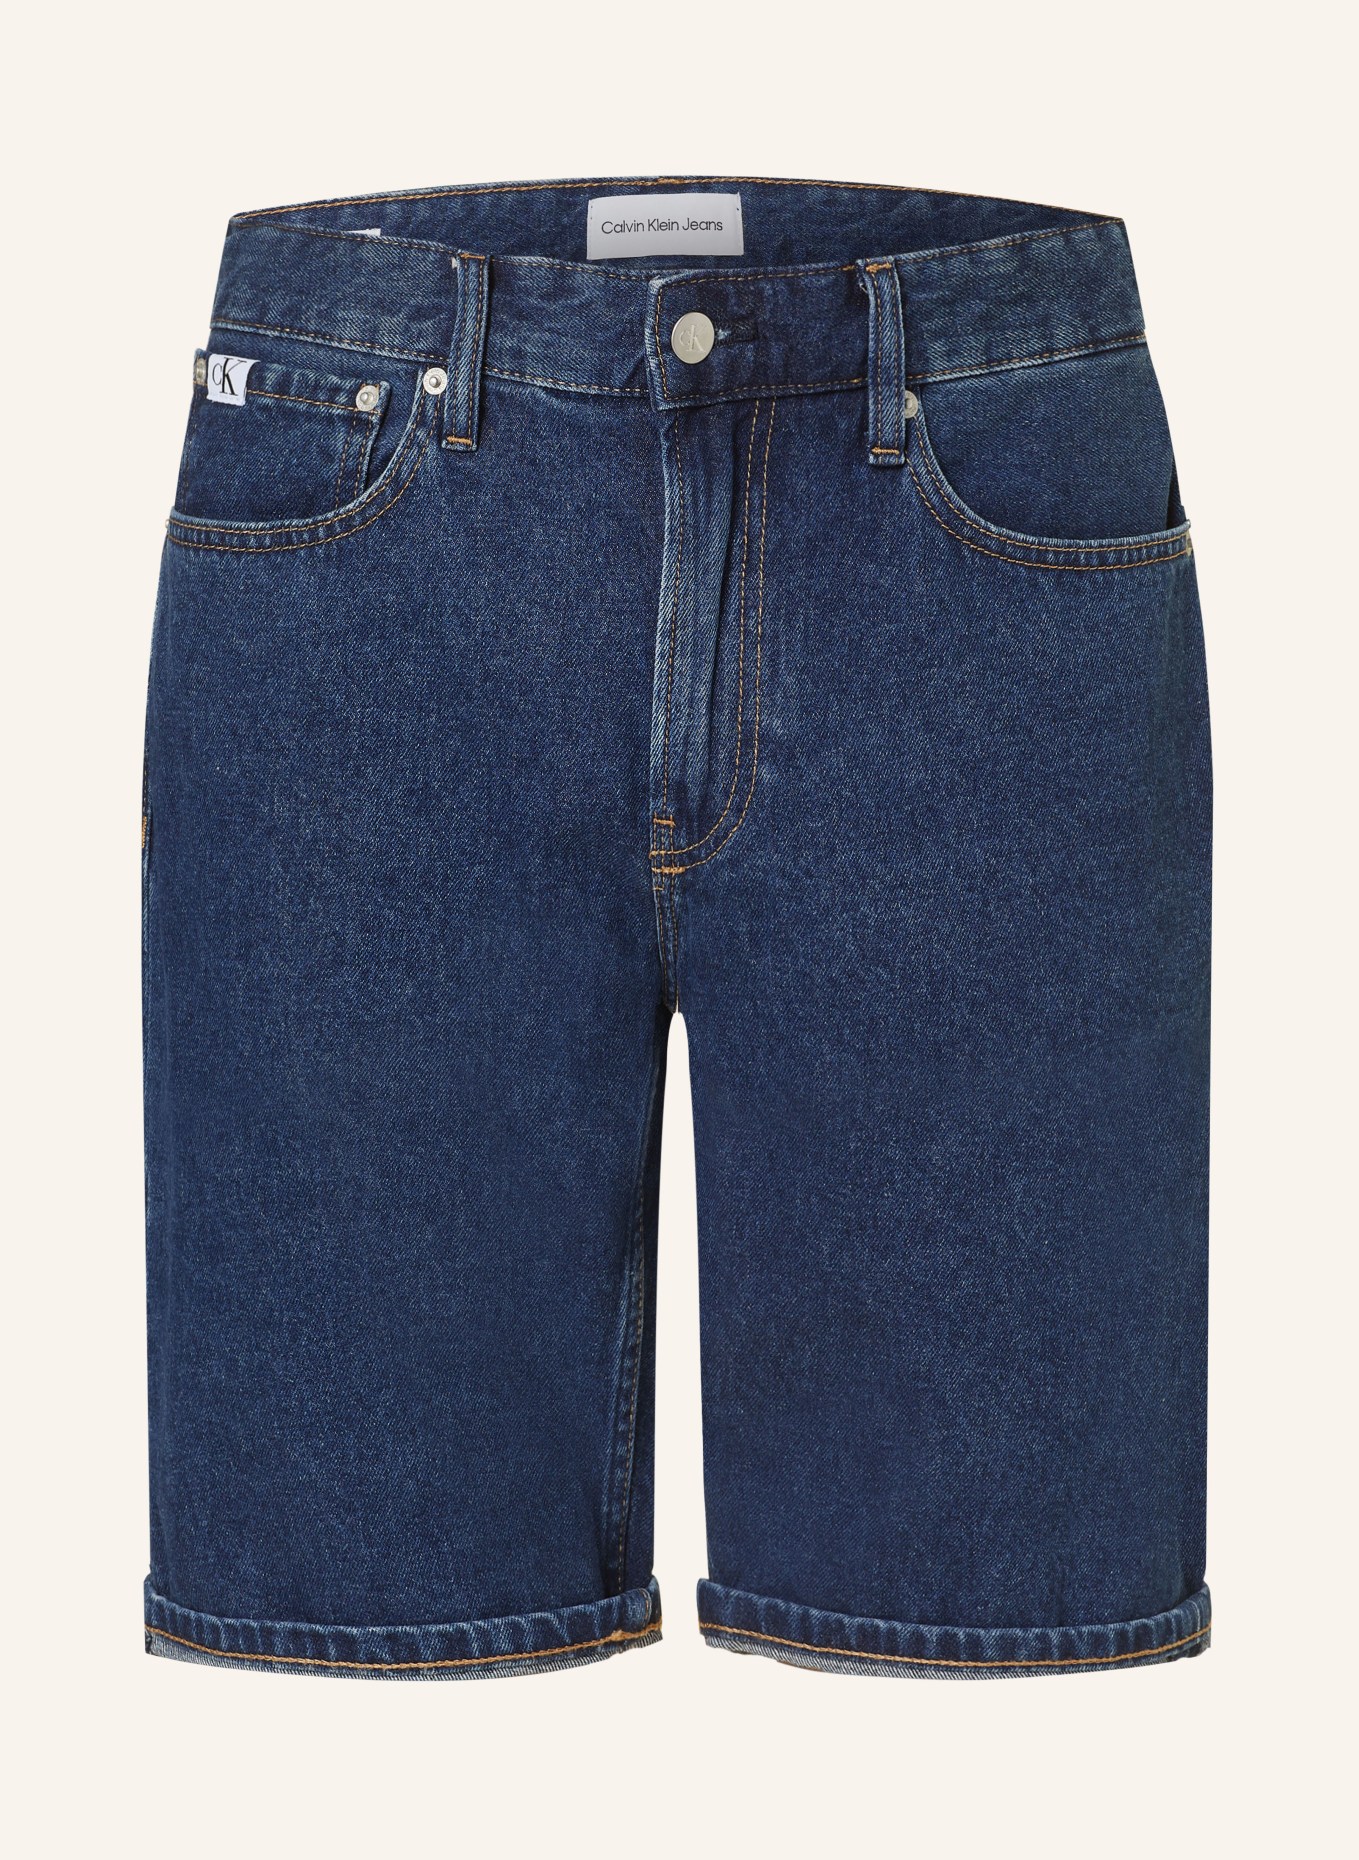 Calvin Klein Jeans Jeansshorts Regular Fit, Farbe: 1BJ DENIM DARK (Bild 1)